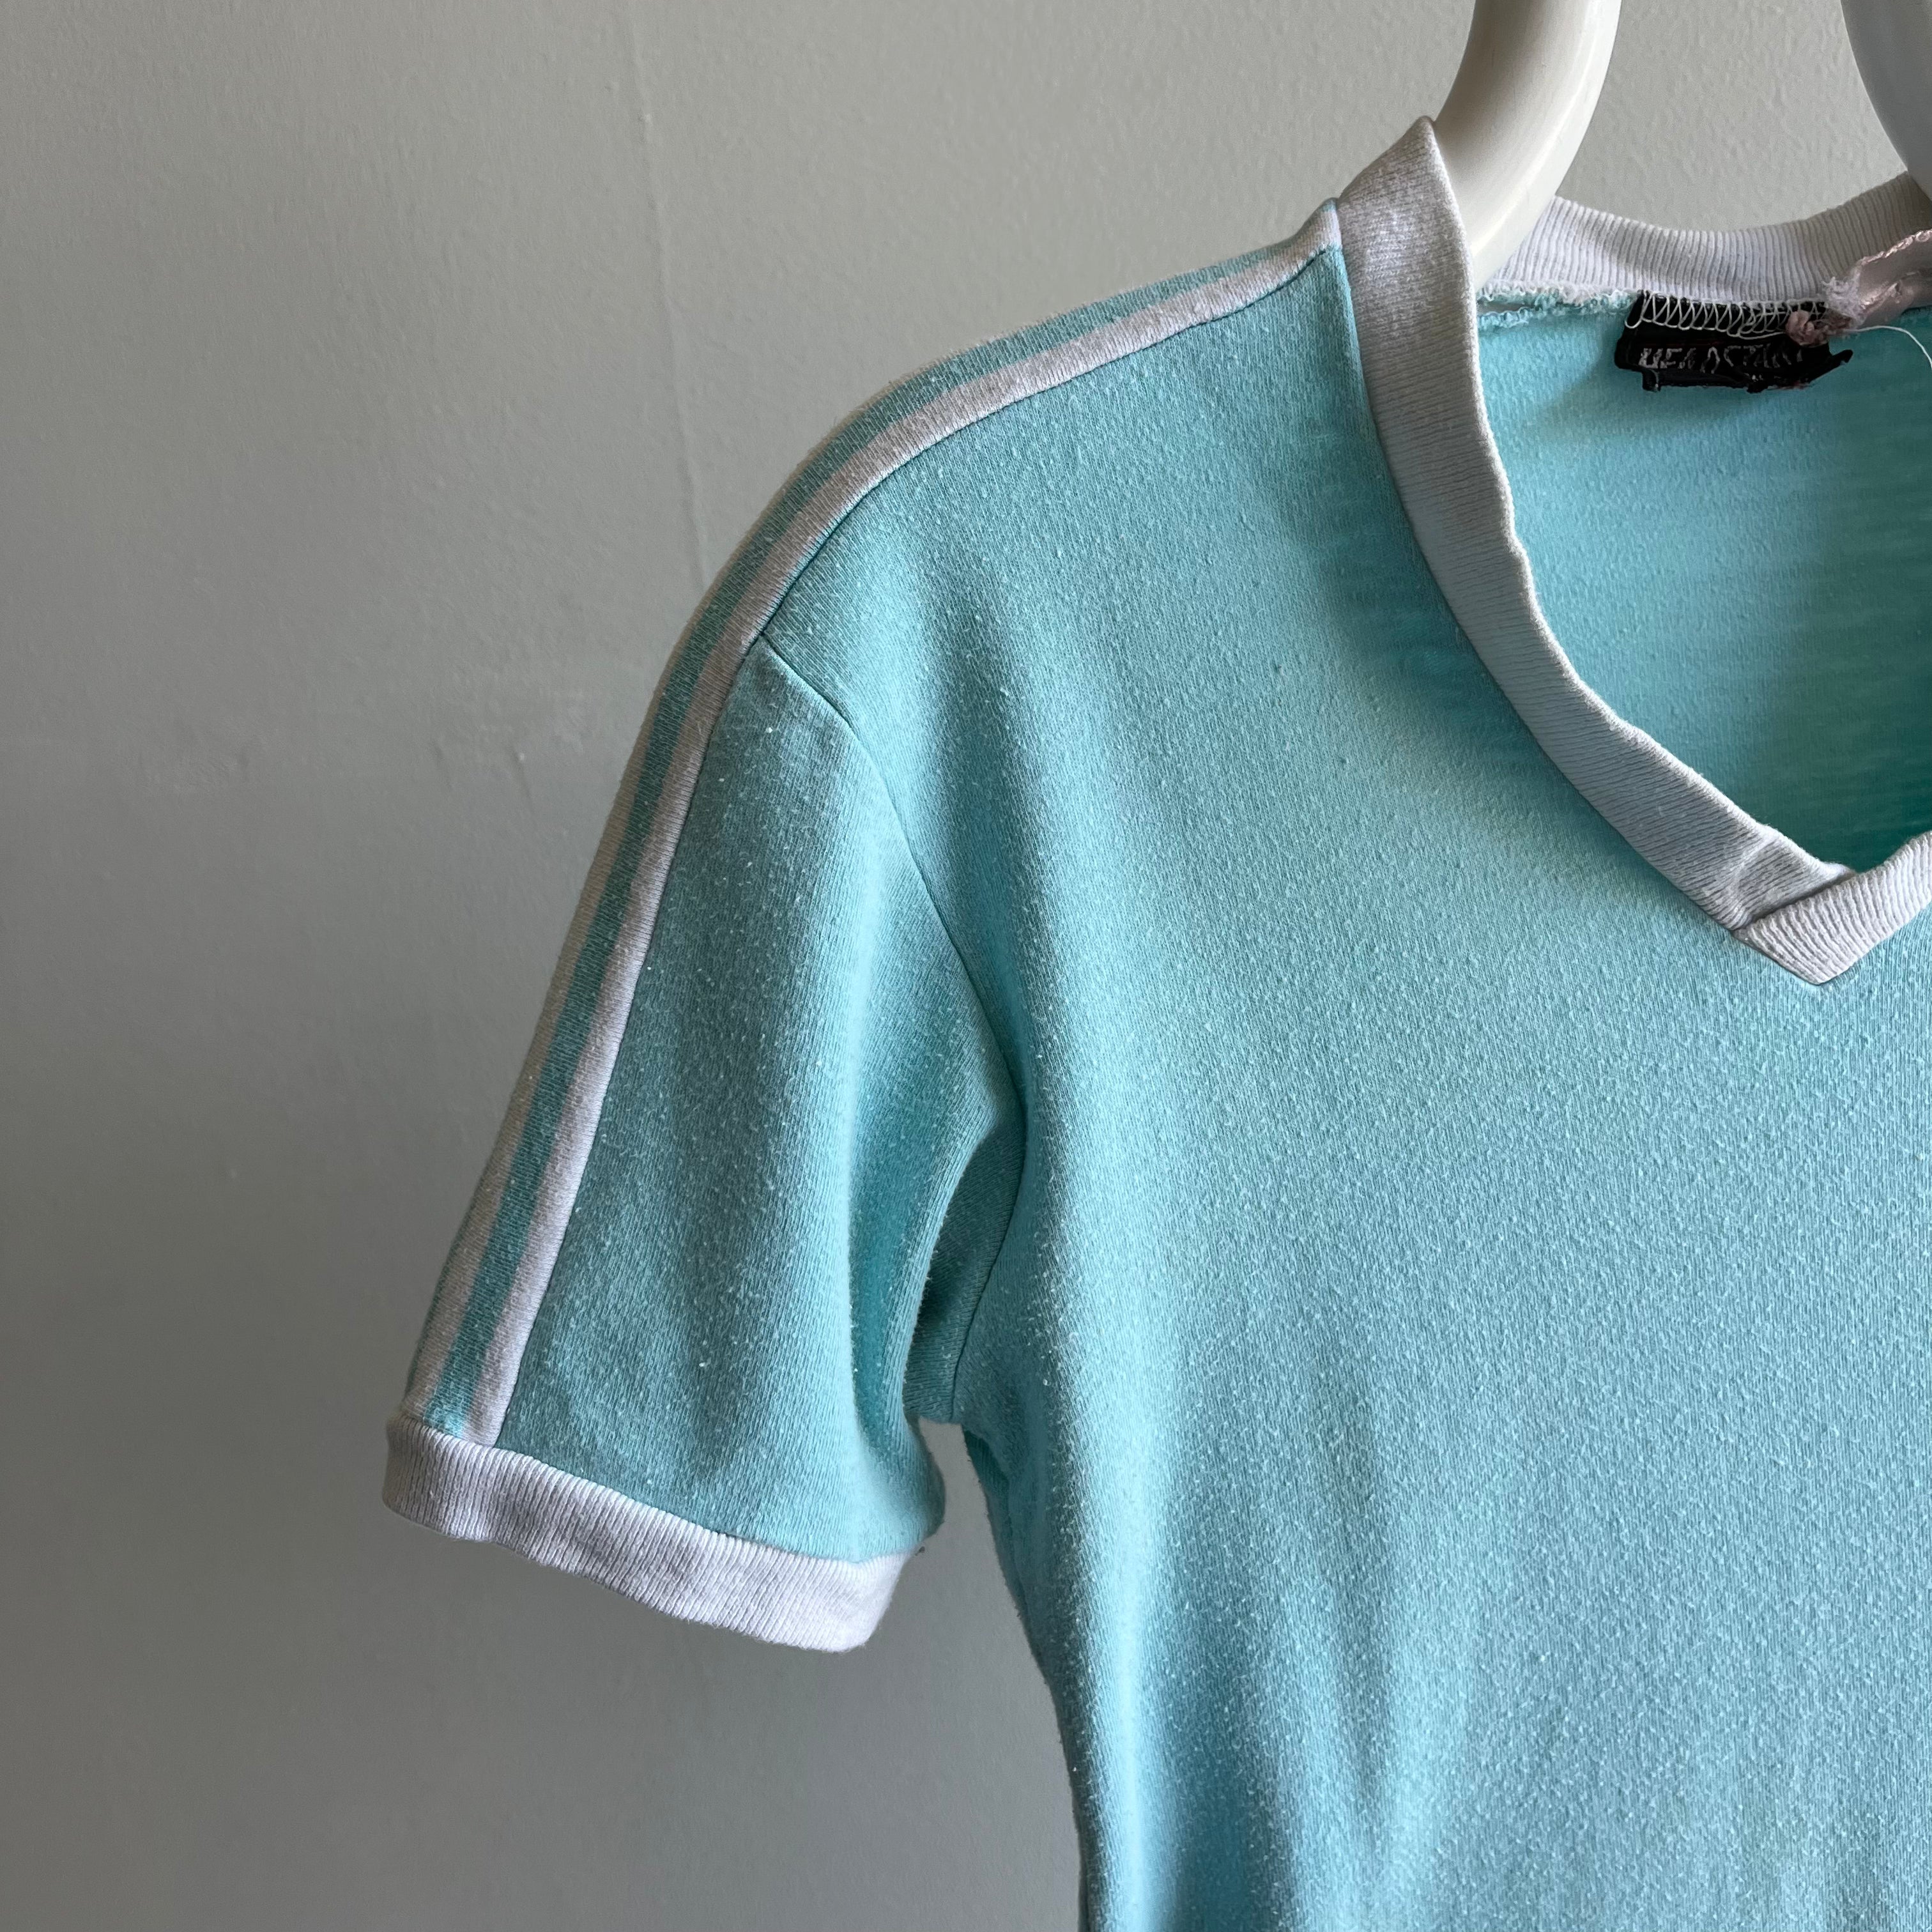 1970s V-Neck Shoulder Stripe Seafoam Green/Blue Fitted T-Shirt